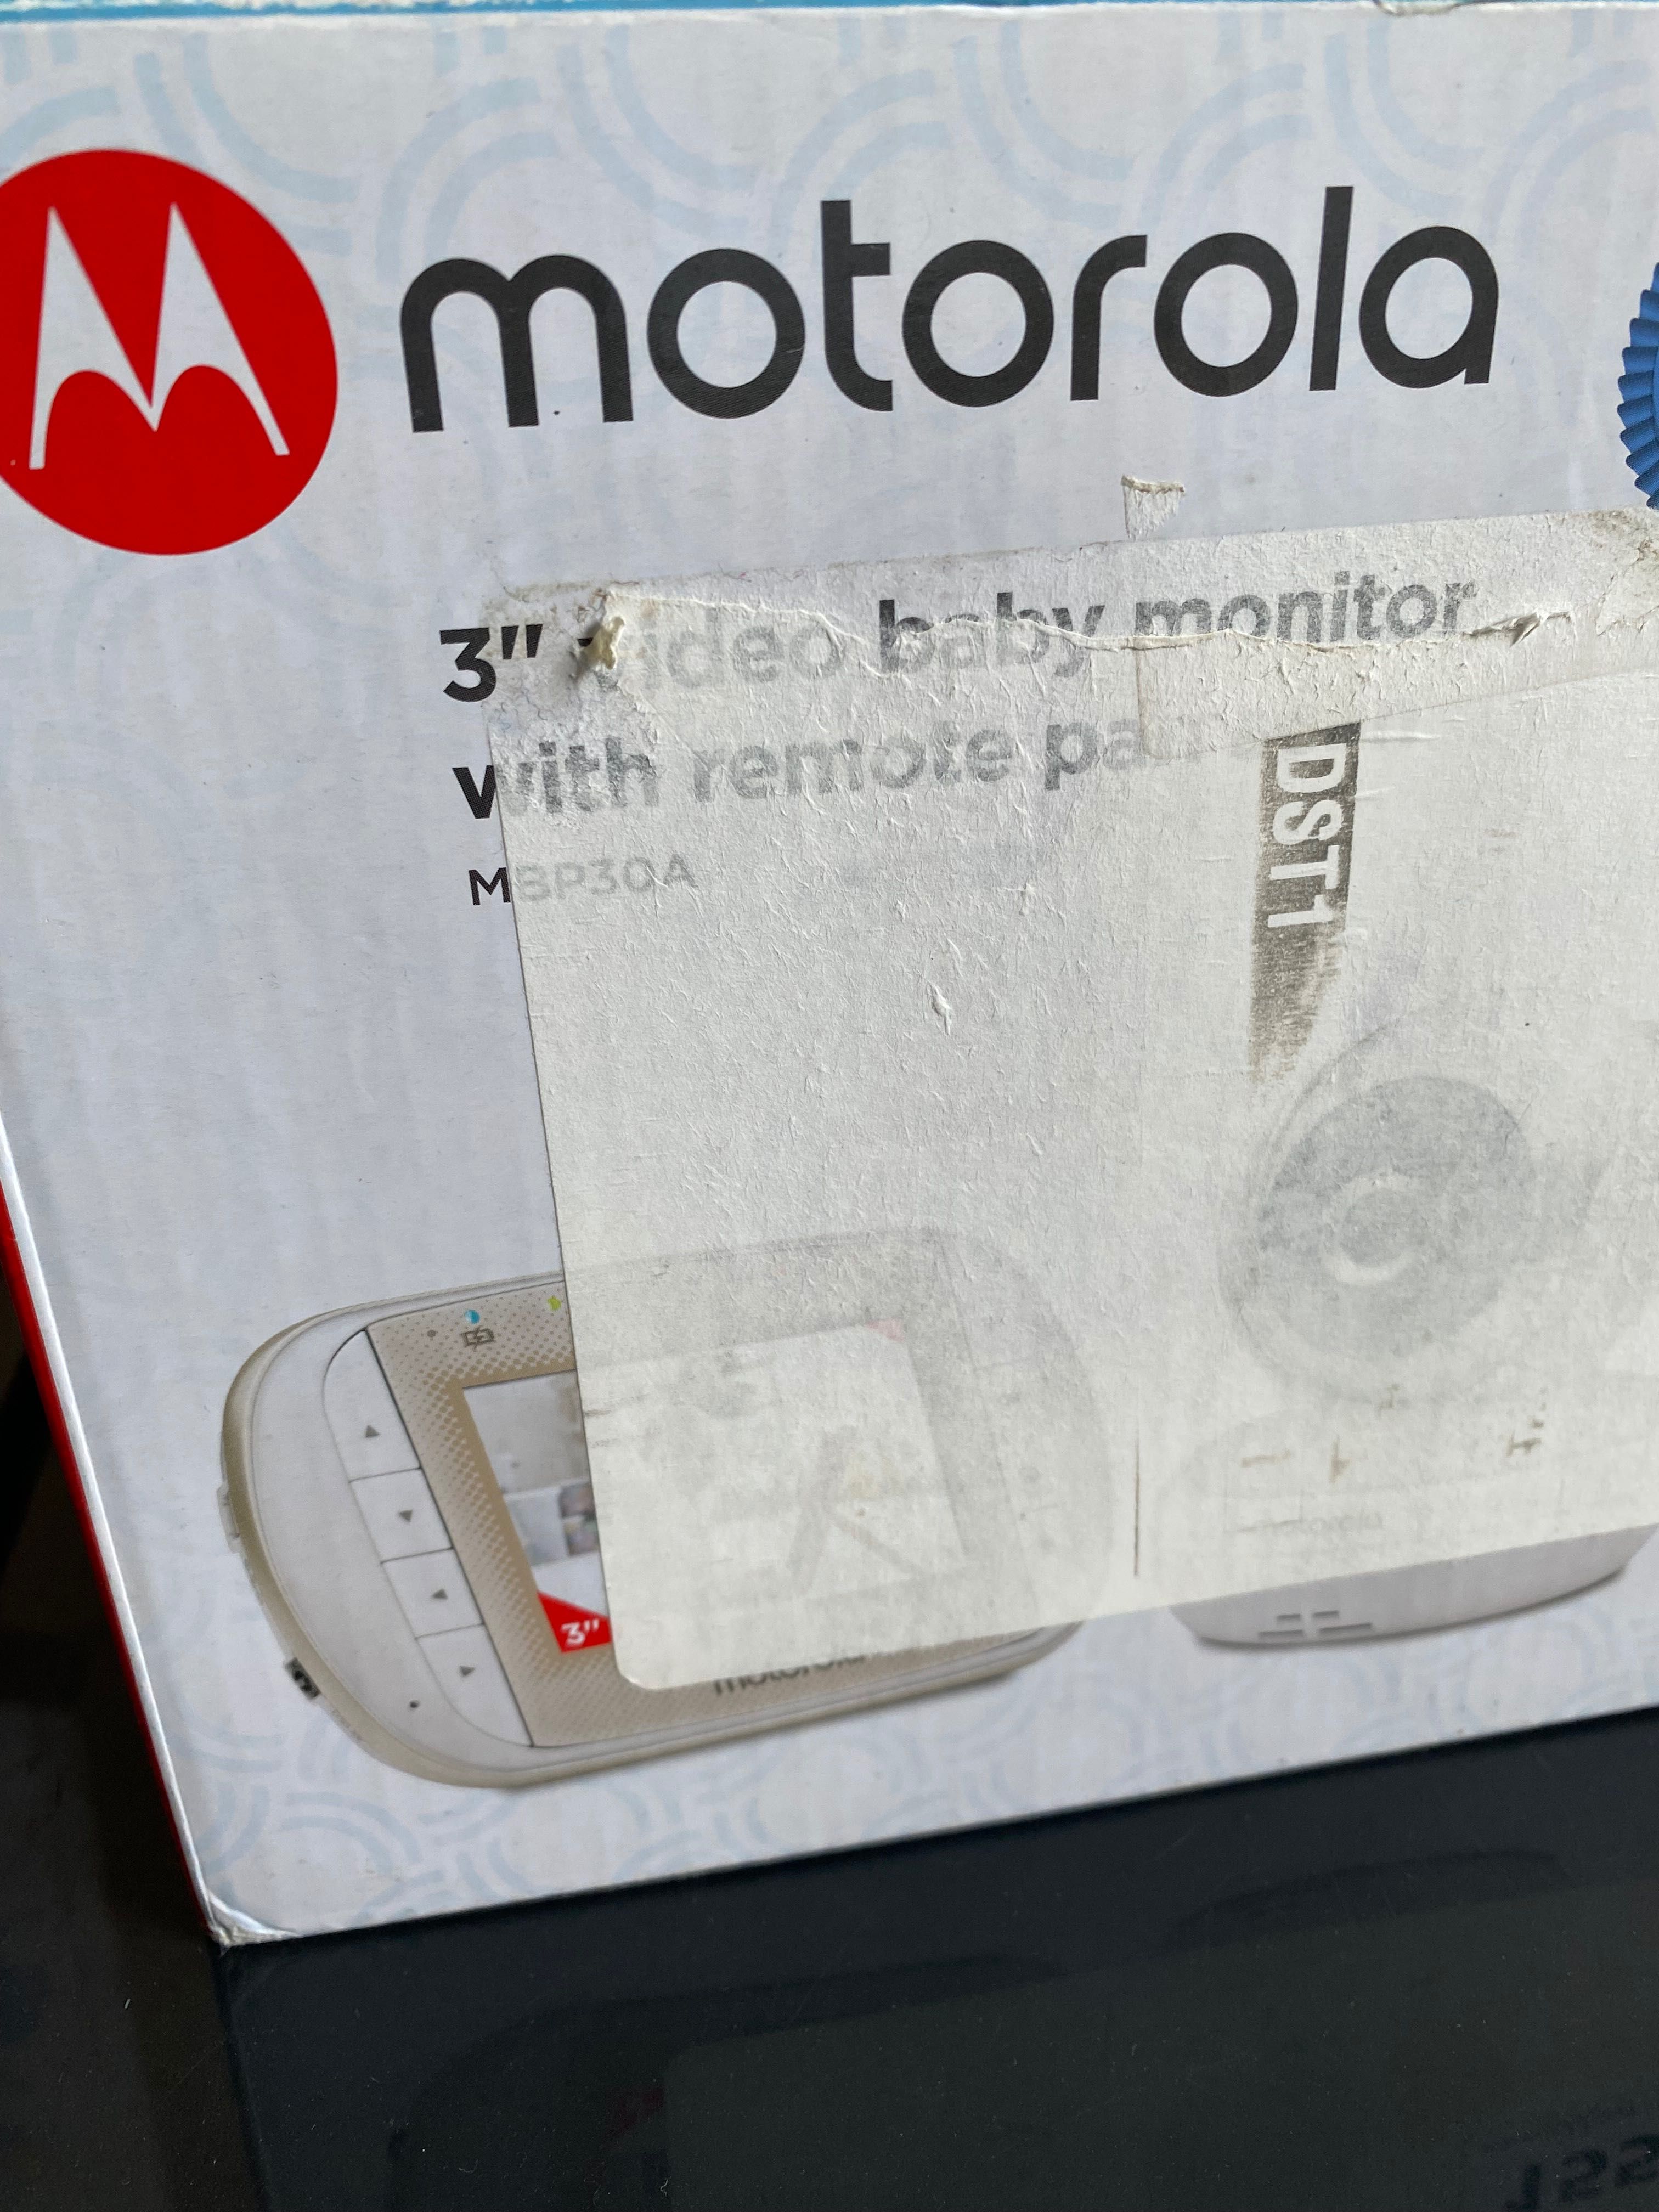 Motorola Baby MBP30A Kamera Wideo dla Niemowląt, Biała, 3"